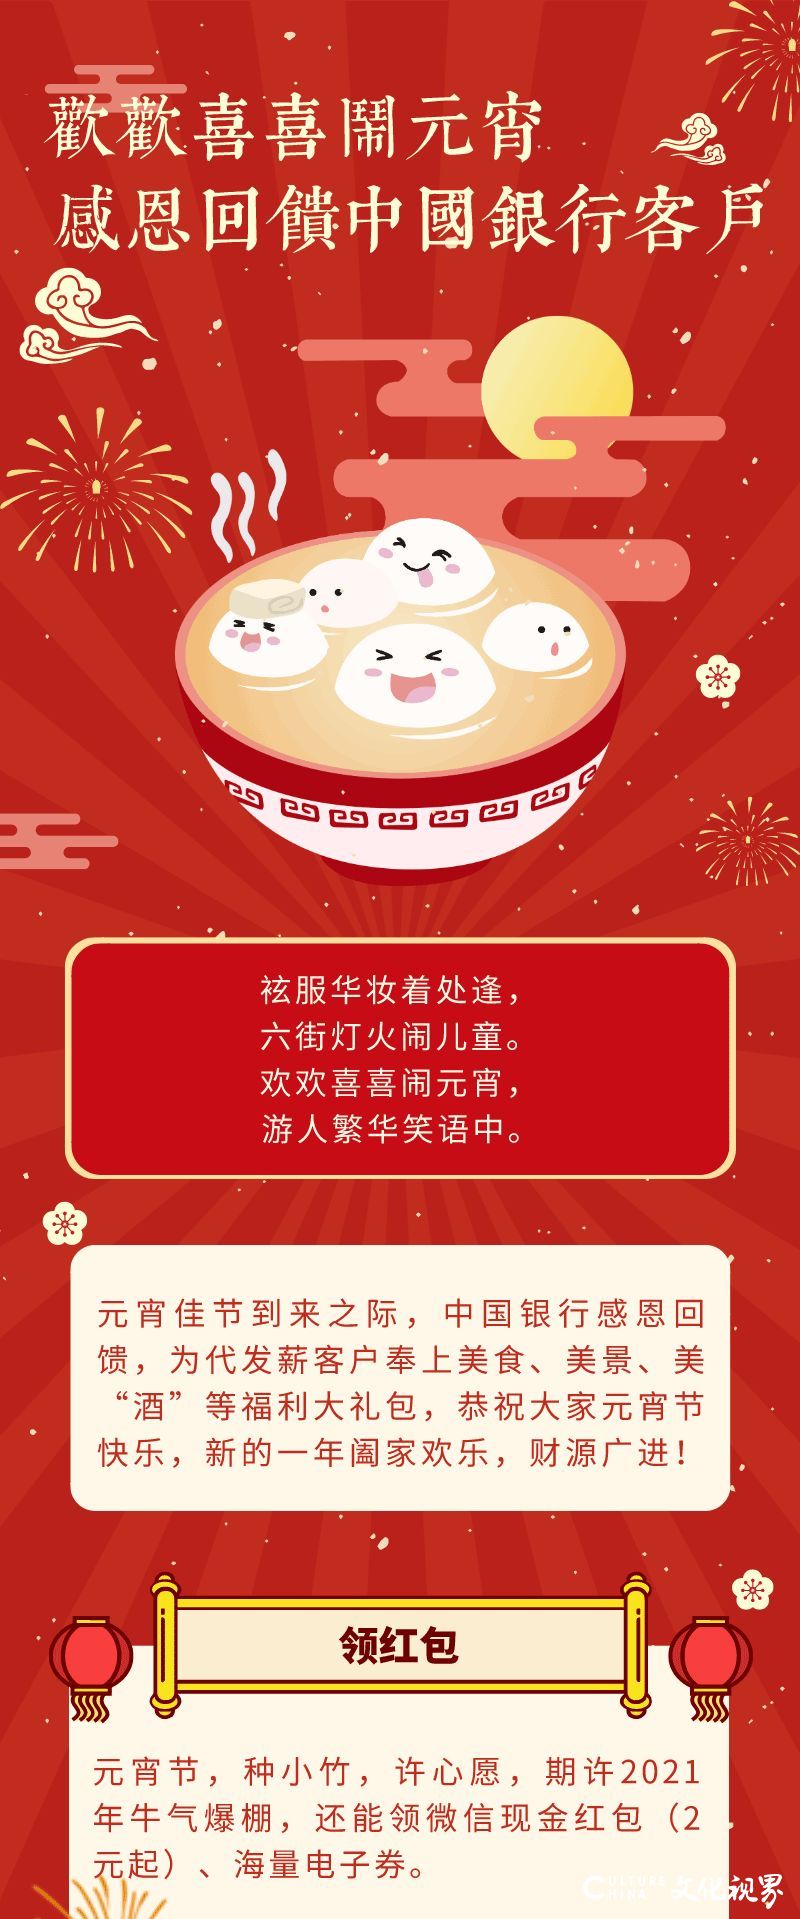 领红包、吃汤圆、听民乐、赏繁花……中国银行元宵节为代发薪客户奉上福利大礼包